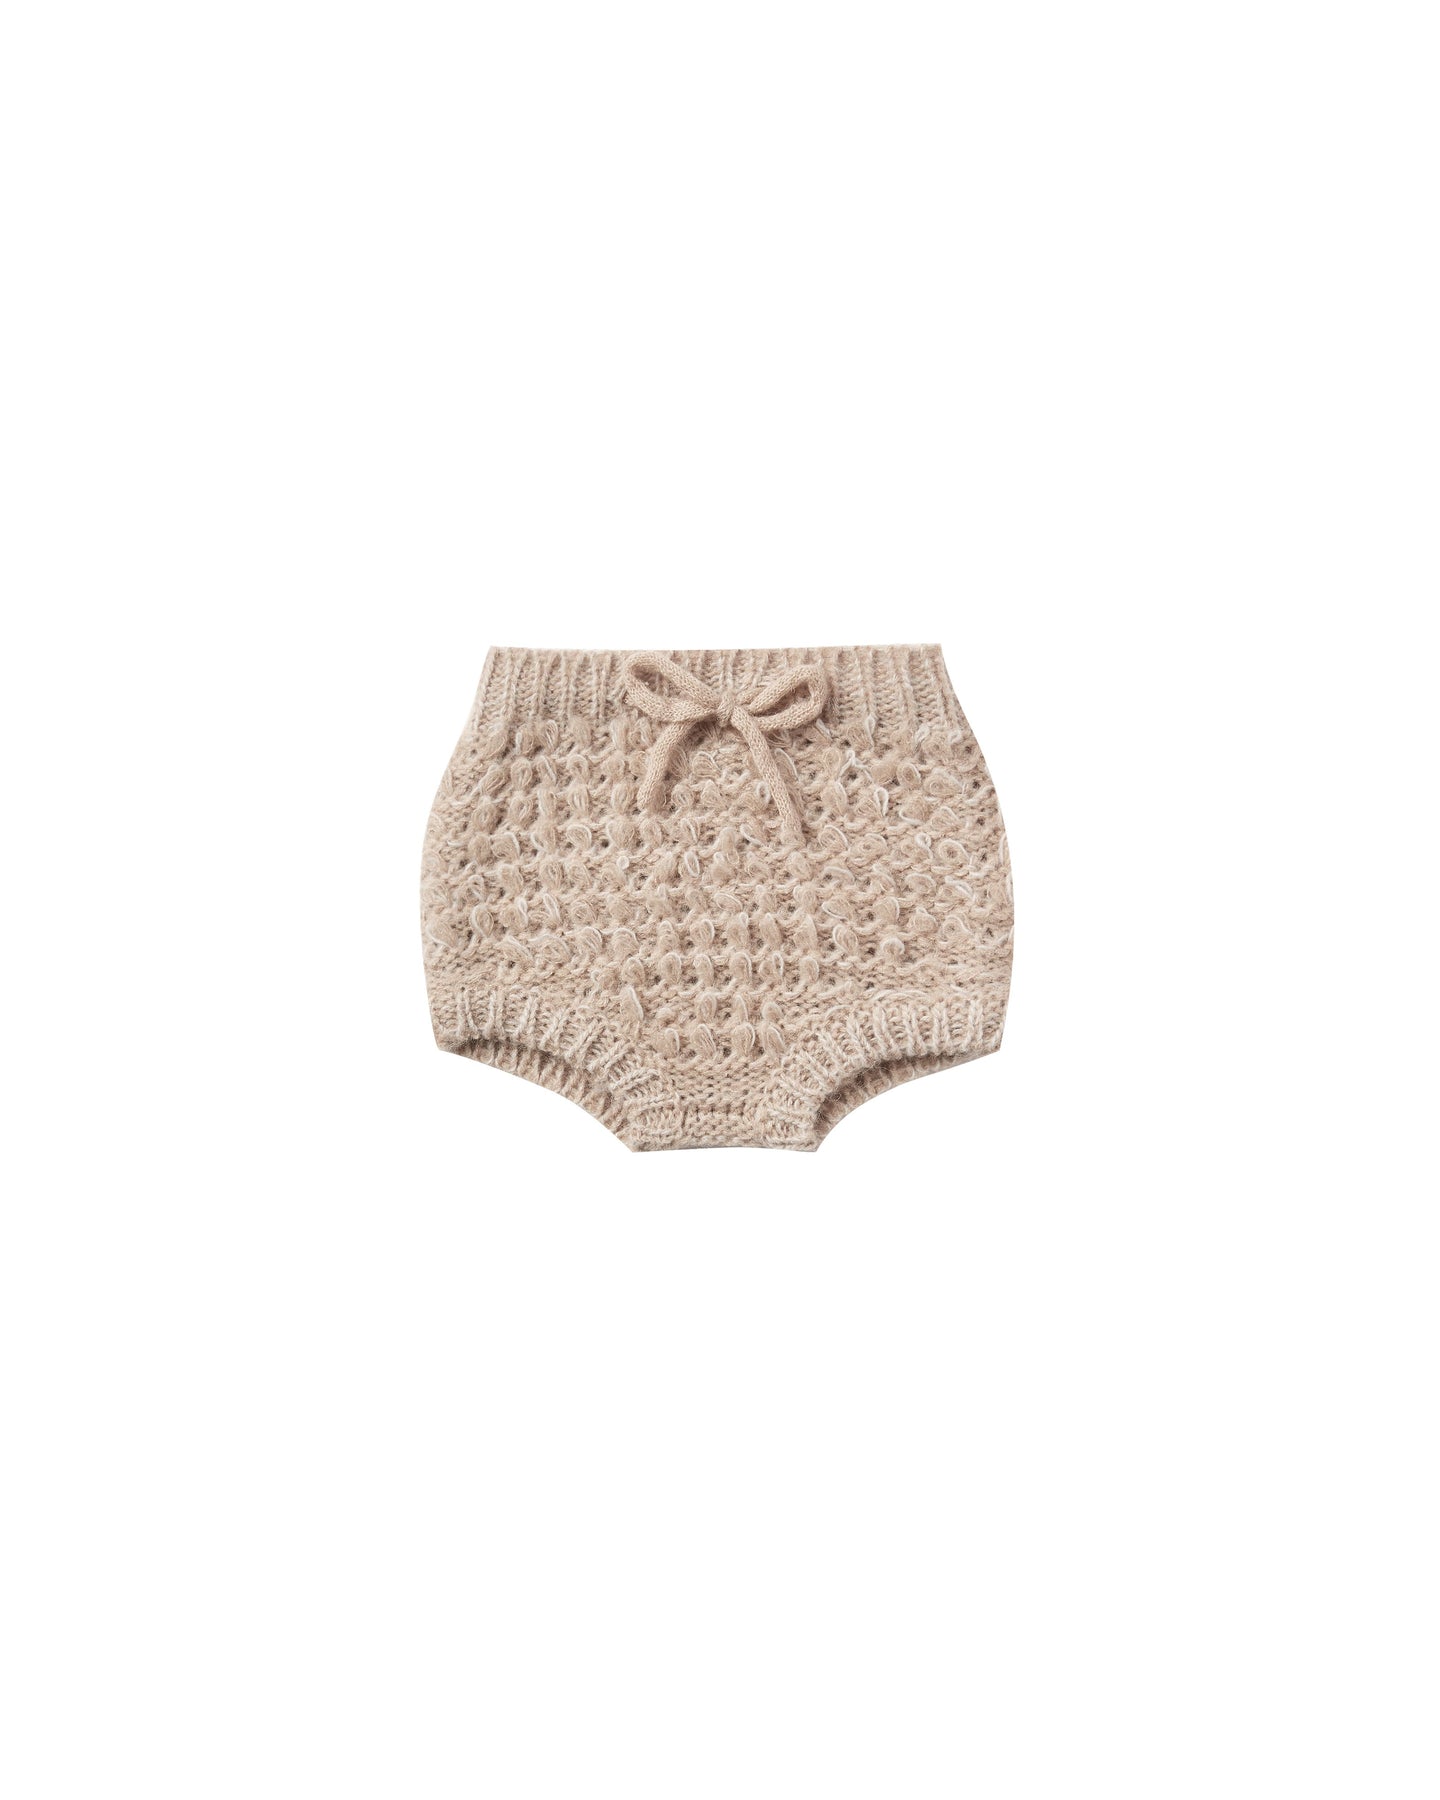 Rylee + Cru - Knit Bloomer Loop Sweater Knit - Oat